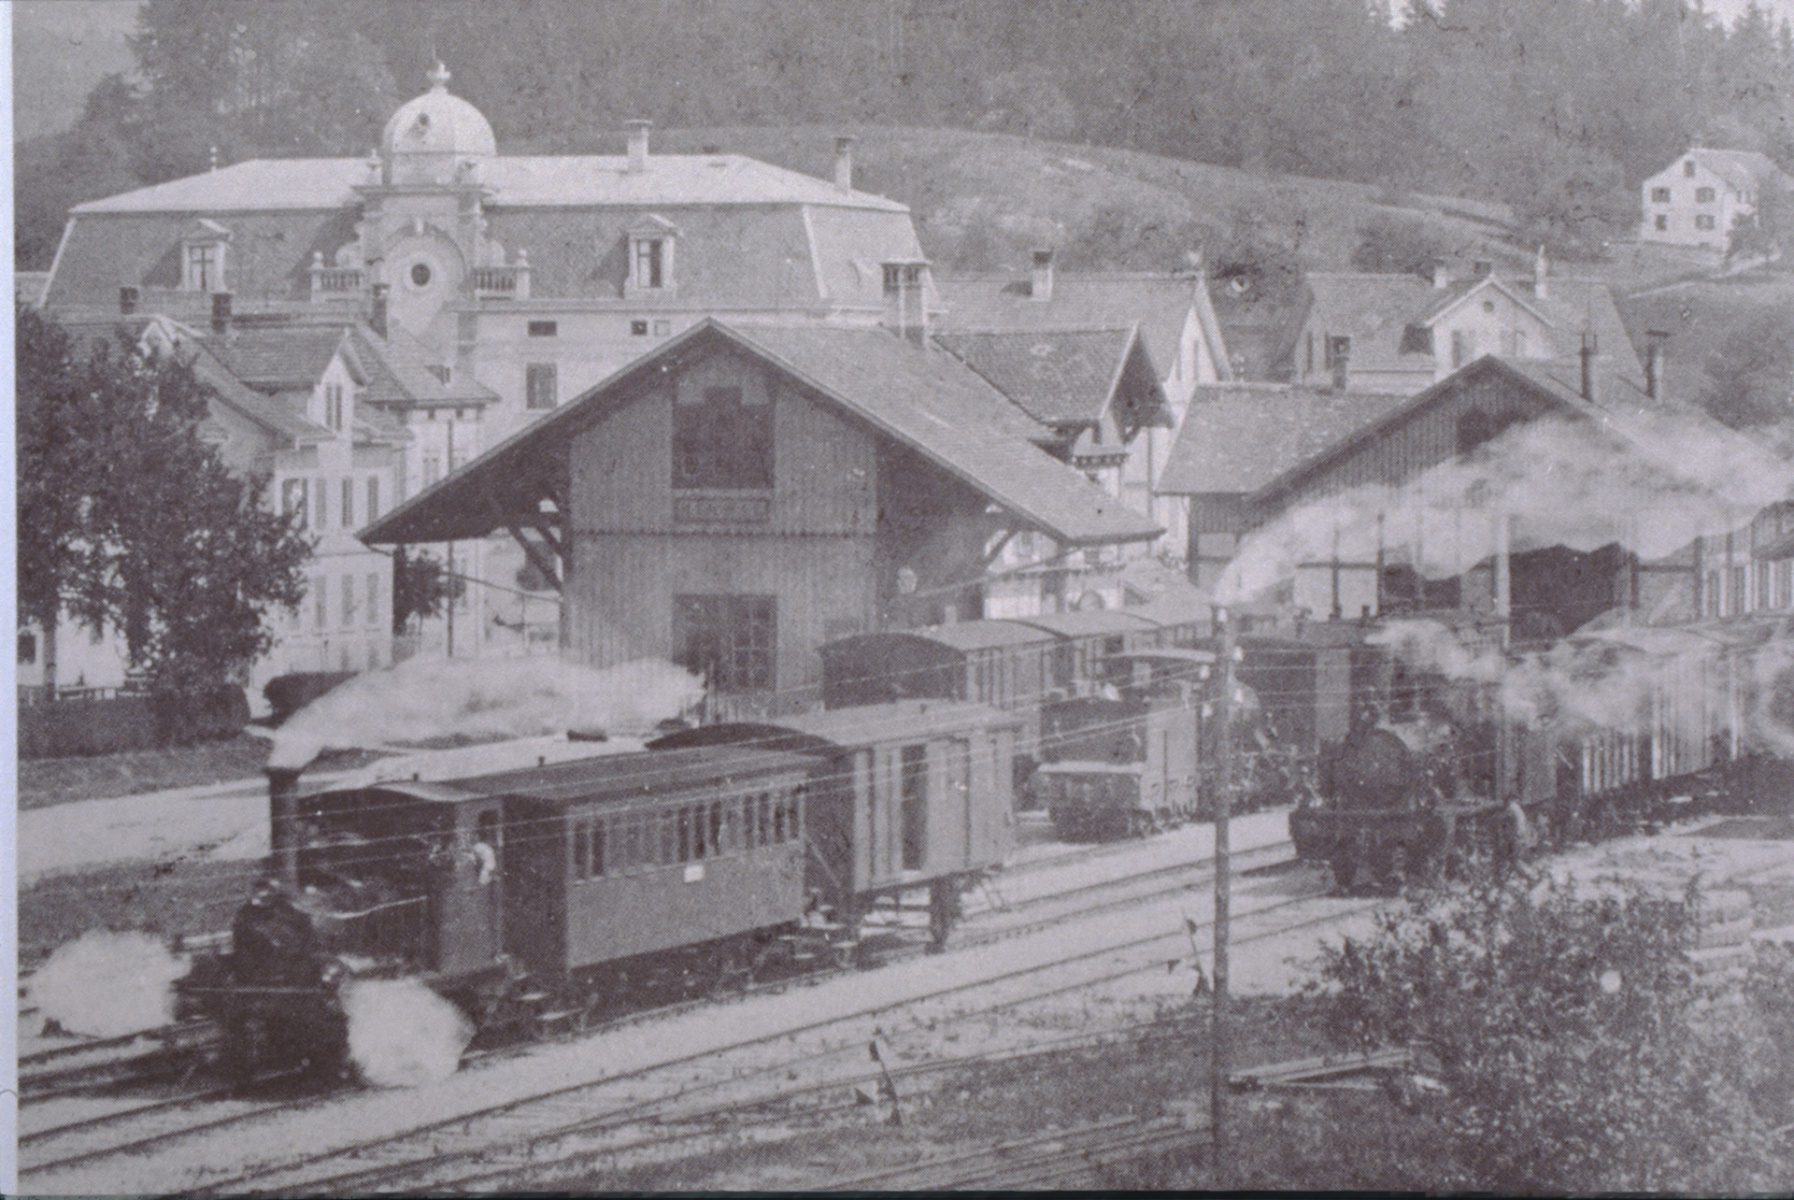 UeBB. Station Hinwil, Ausfahrt eines UeBB-Zuges Ritg. Dürnten, grosses Gebäude-Hotel Bachtel, abgebrannt 1936